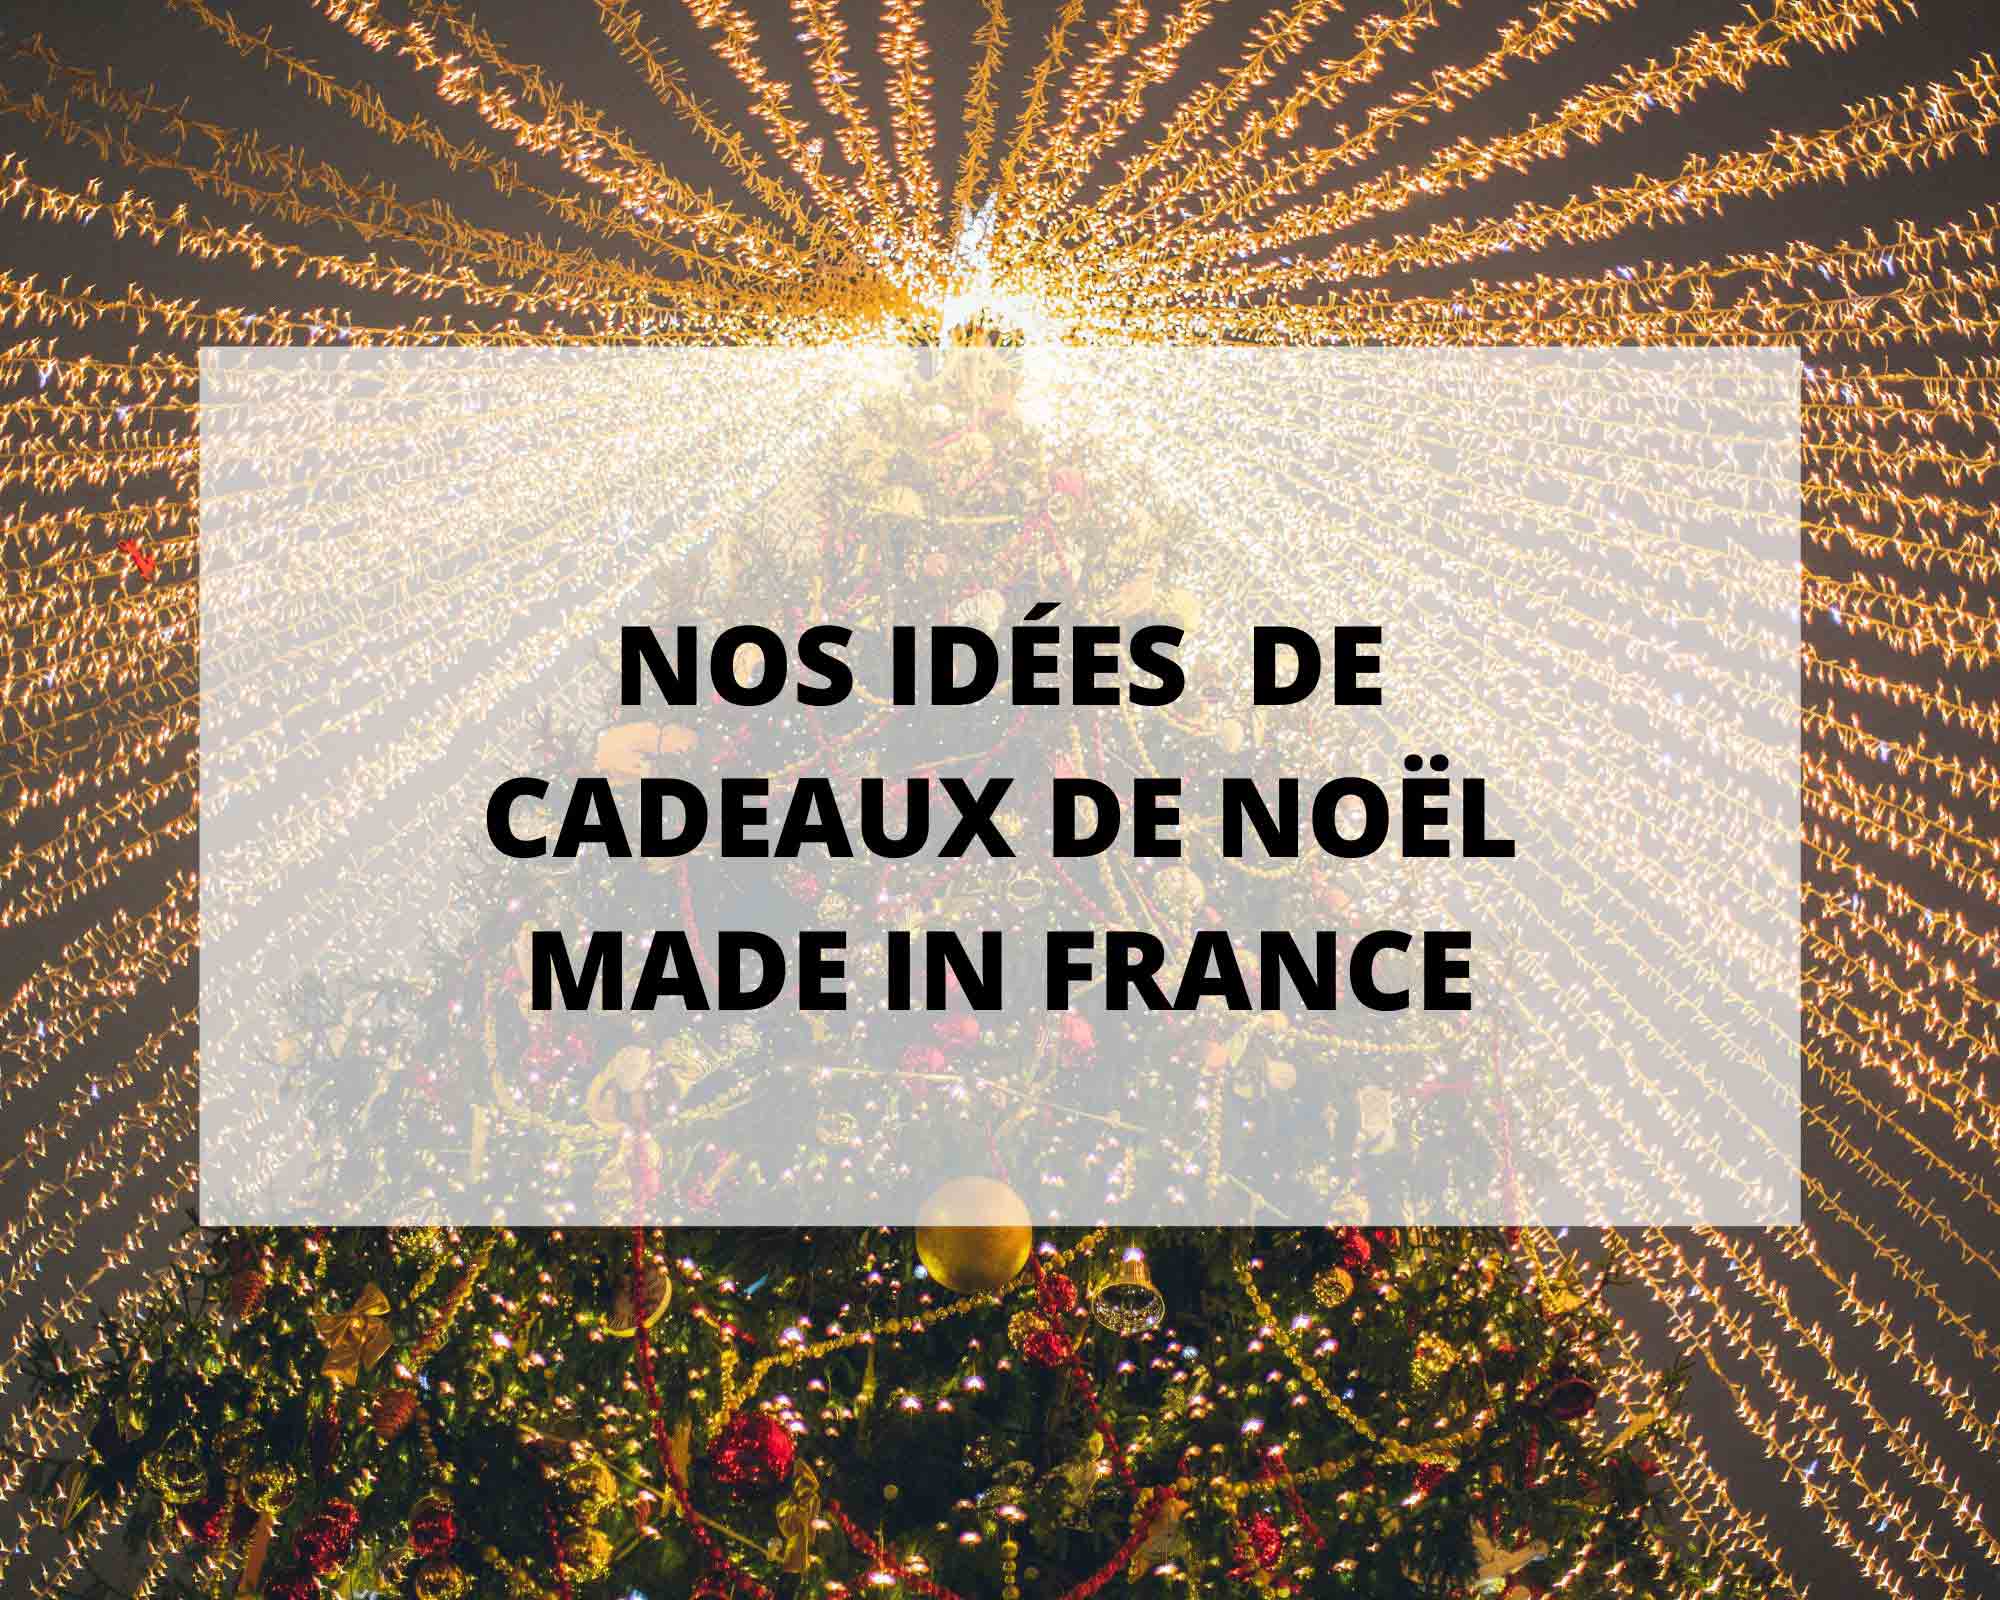 Cadeau Noel France : découvrez notre sélection d'idées de cadeaux de Noël, Made in France.